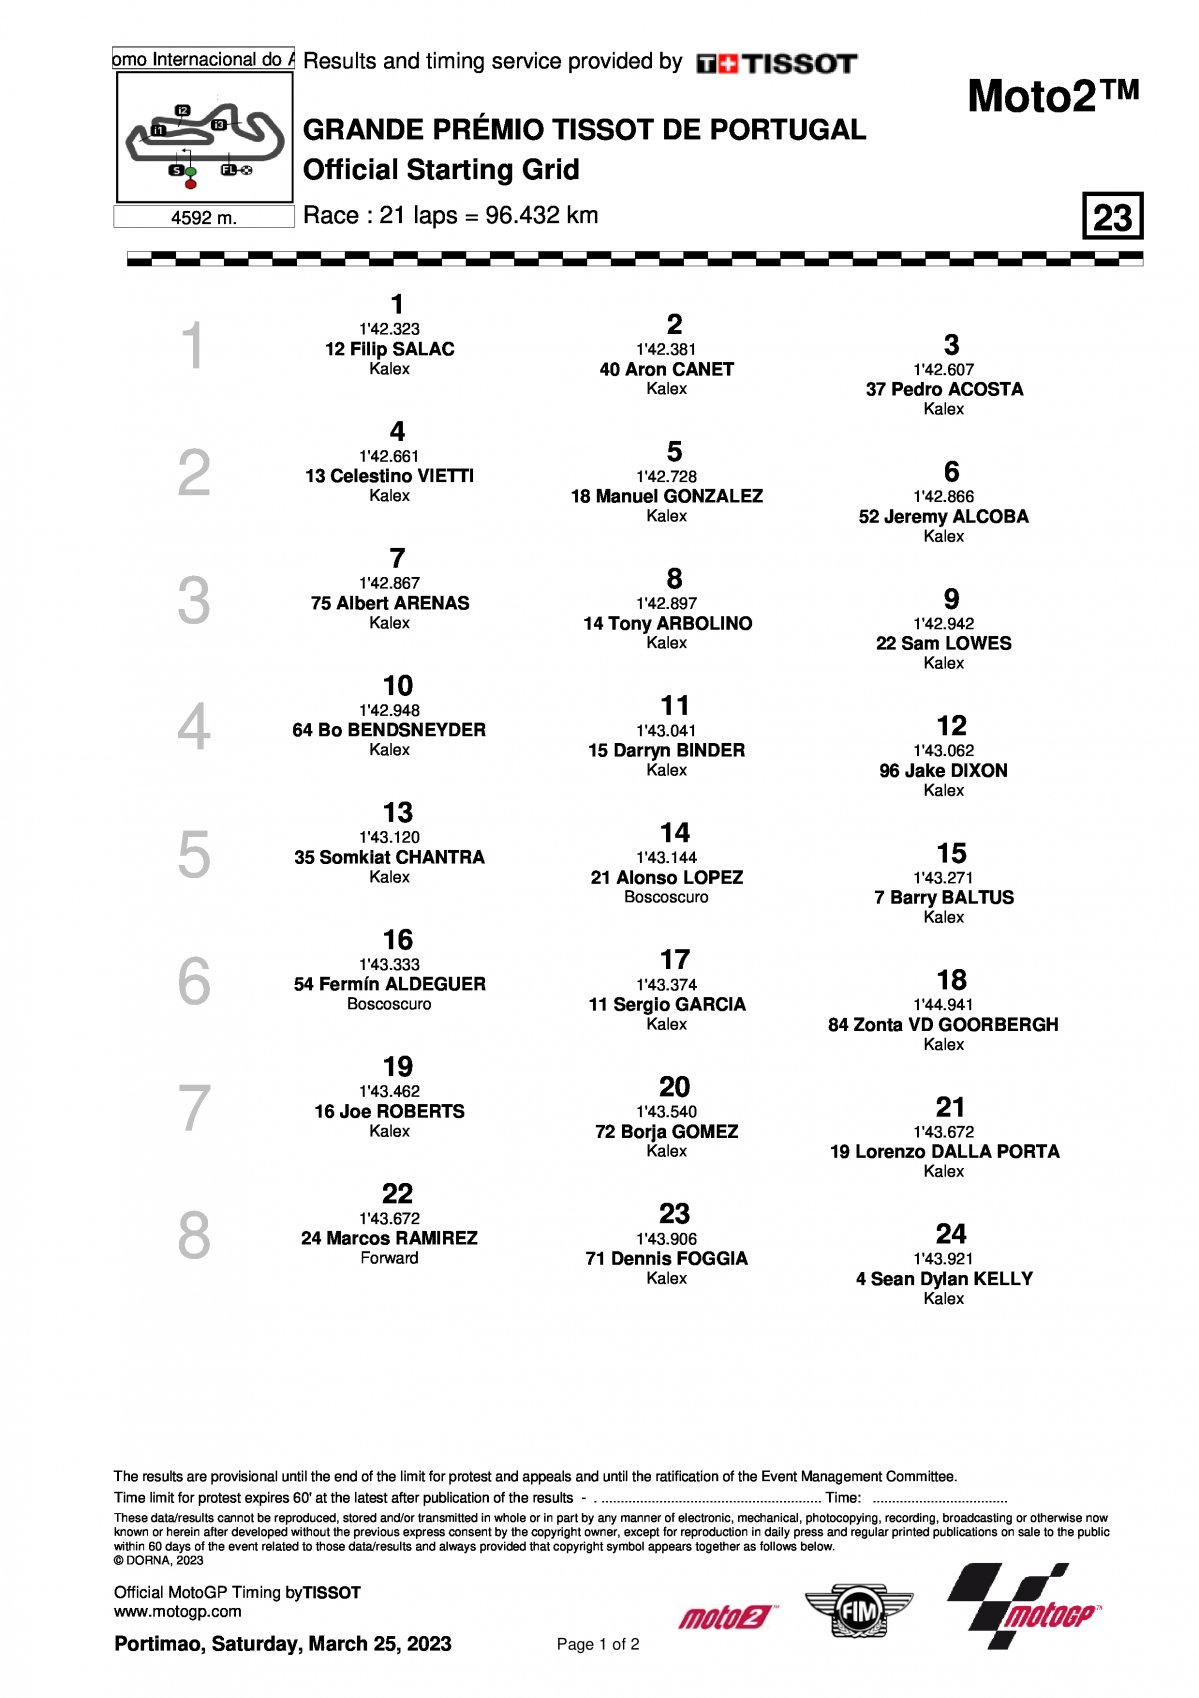 Стартовая решетка Гран-При Португалии Moto2 (26/03/2023)